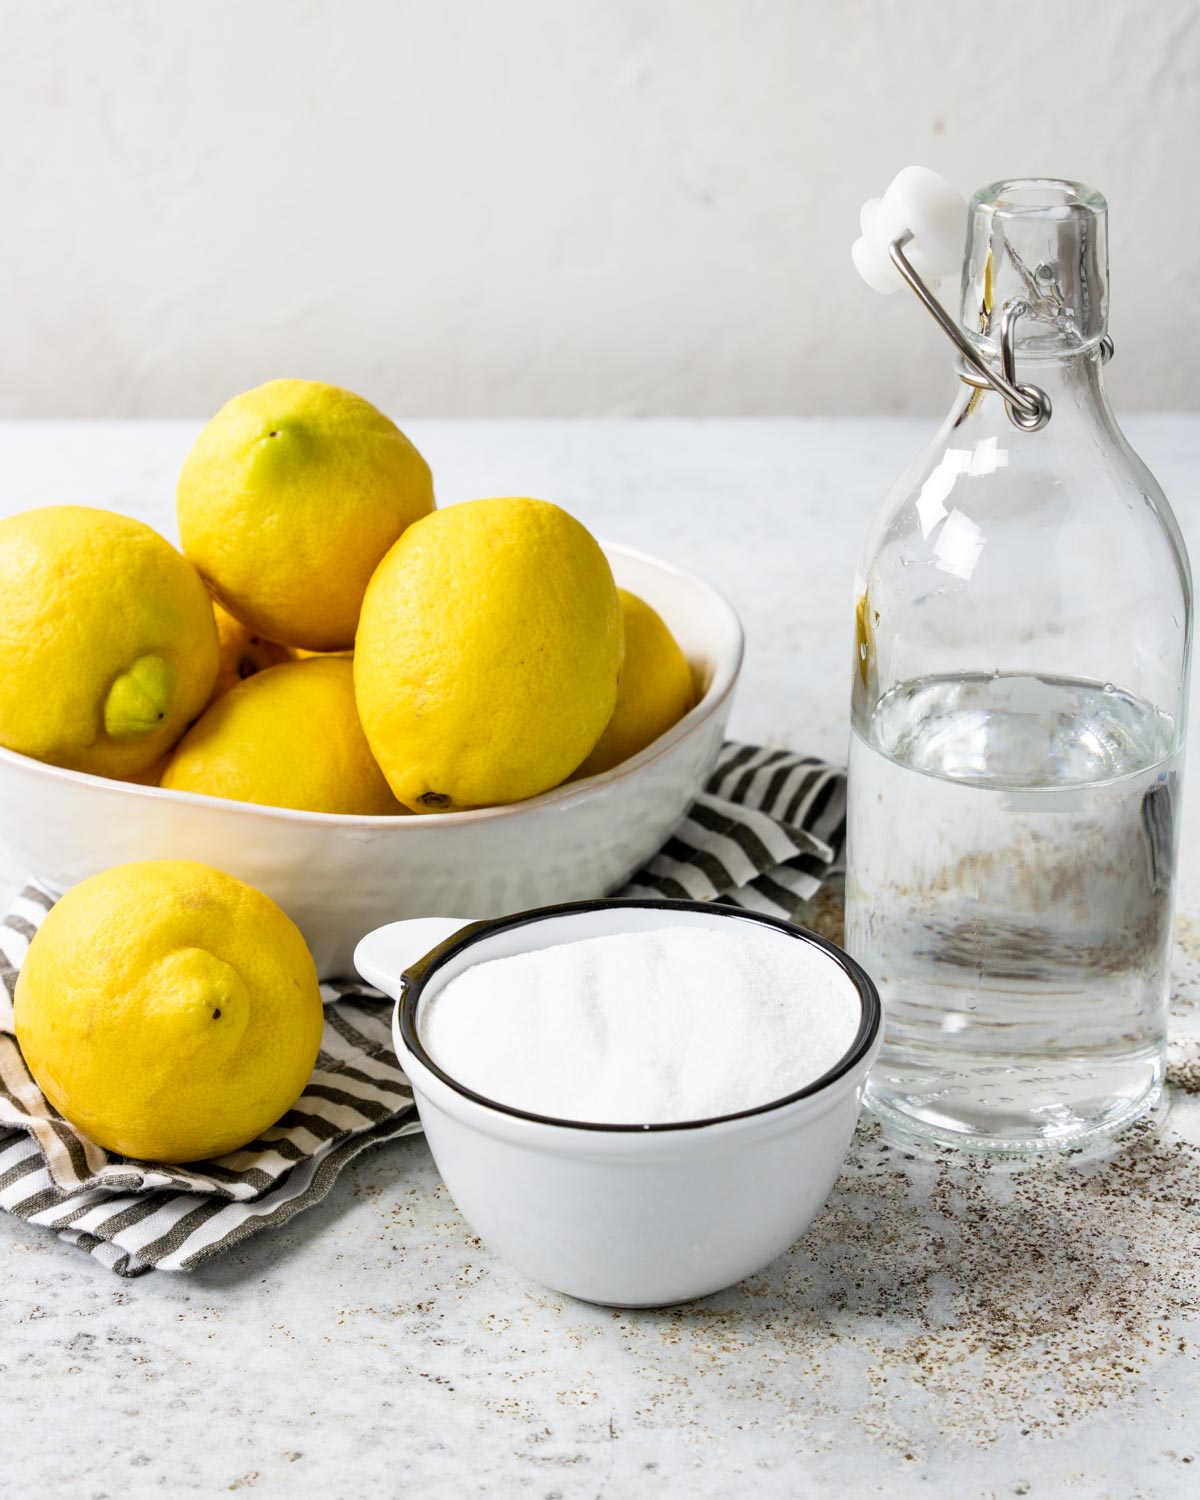 Fresh lemonade ingredients - lemons, sugar, water